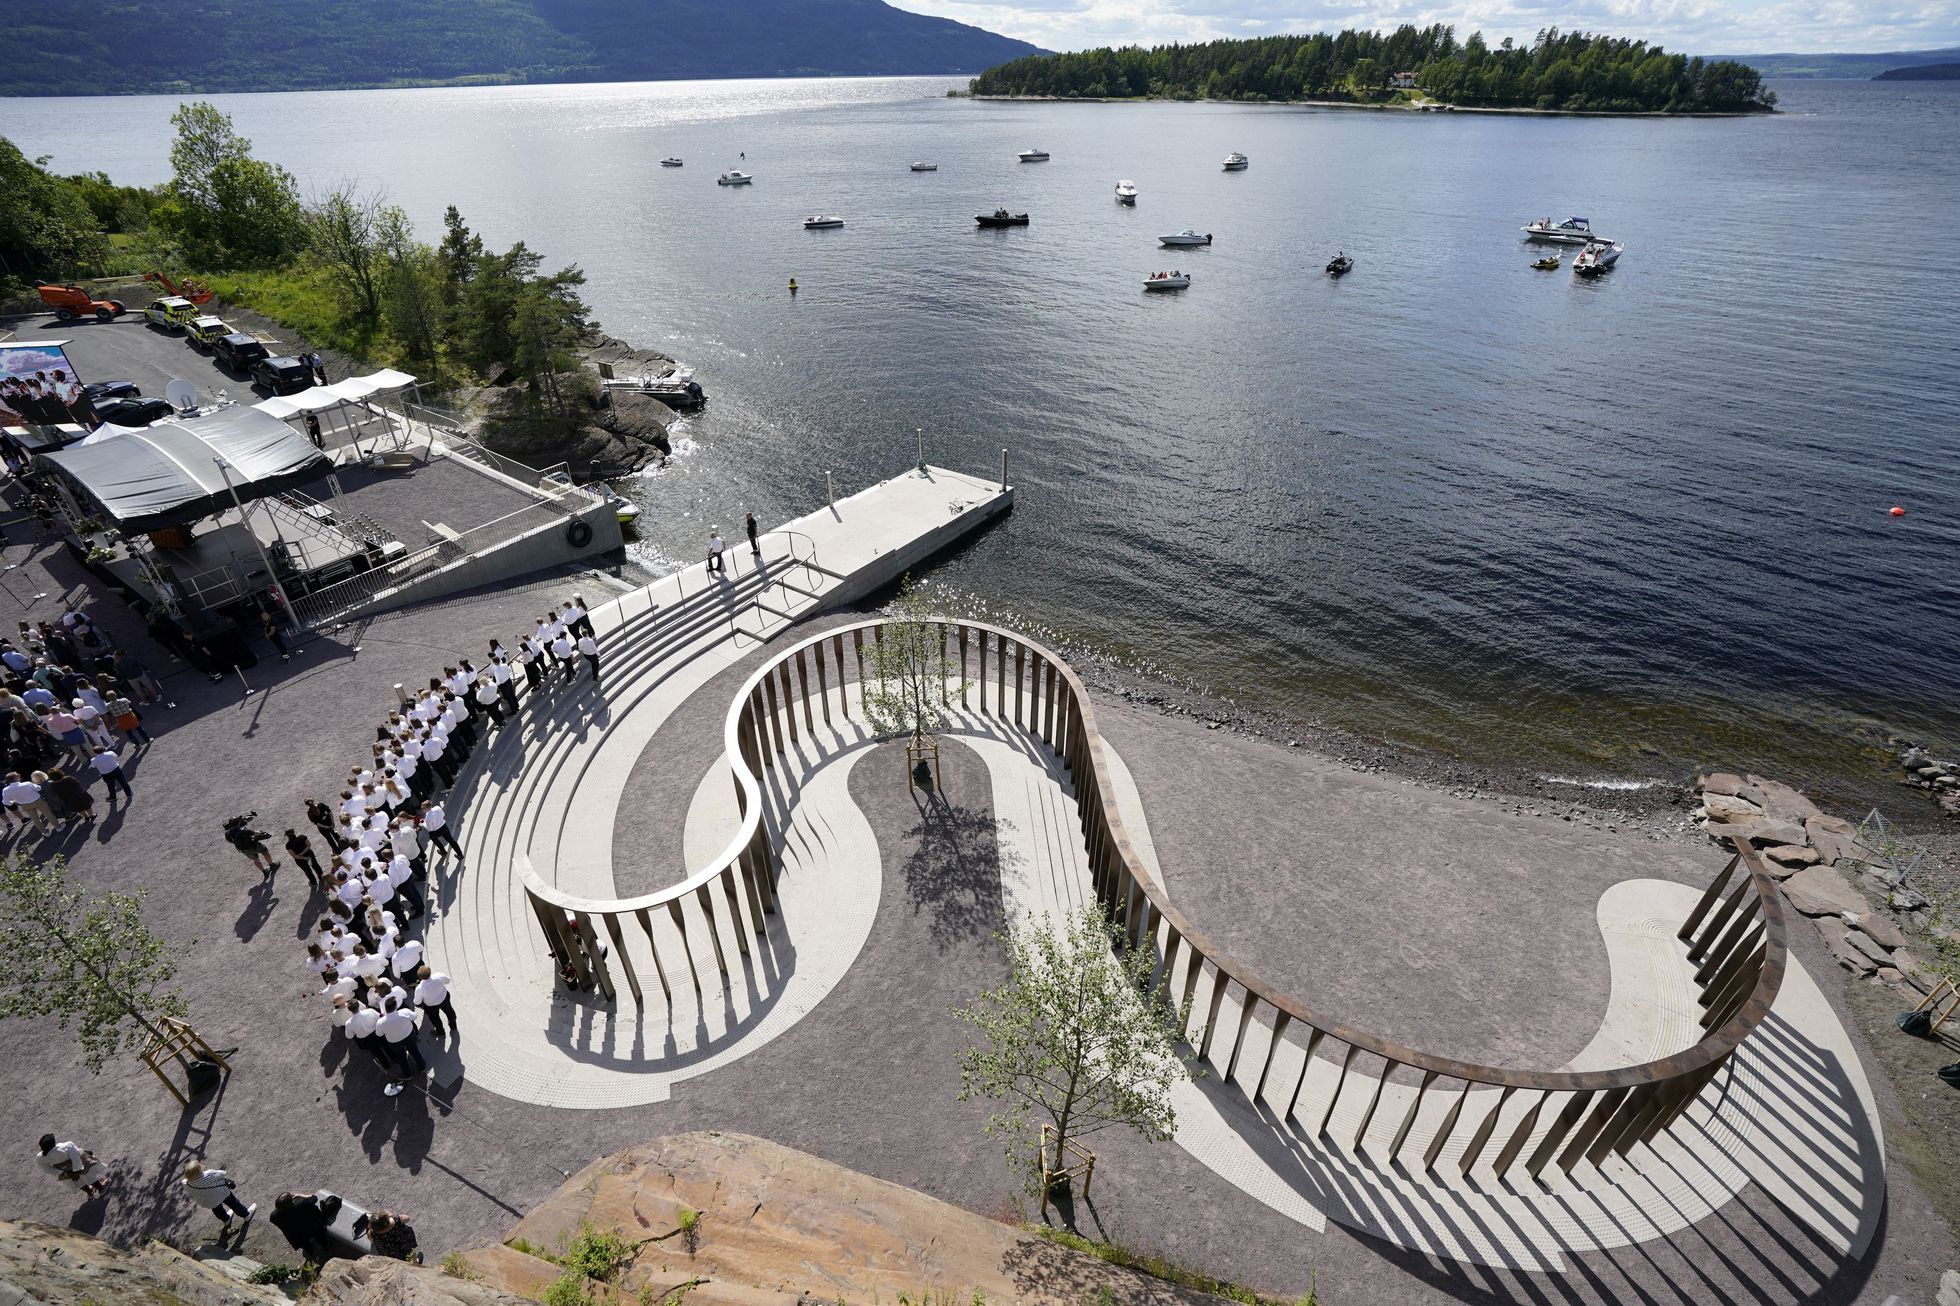 Note 77. Norge har åpnet et minnesmerke dedikert til ofrene til morderen Breivik